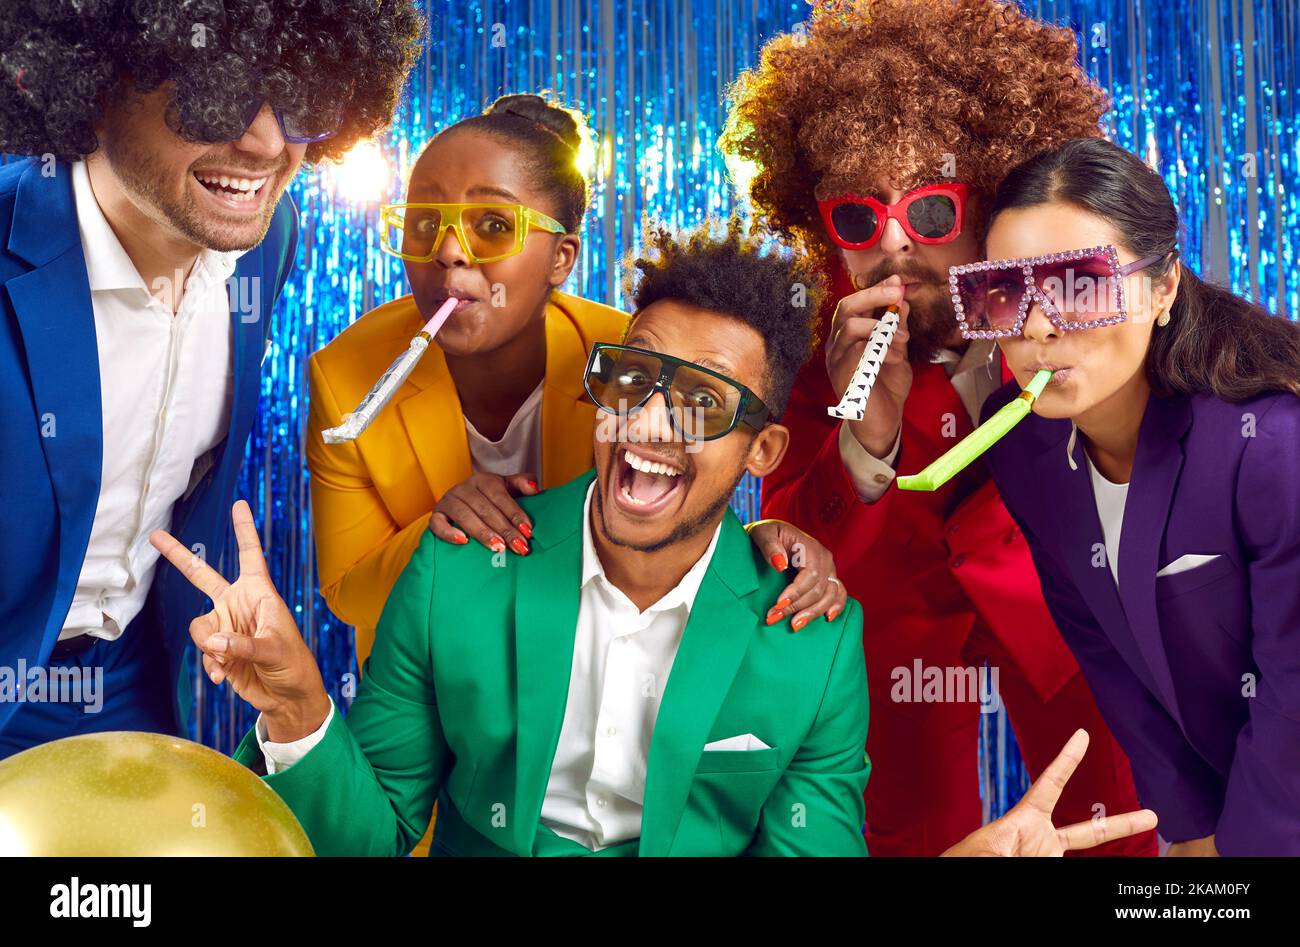 Fröhliche Menschen in bunten Kostümen, witzigen Disco-Brillen und Perücken, die gemeinsam Party-Hörner blasen Stockfoto